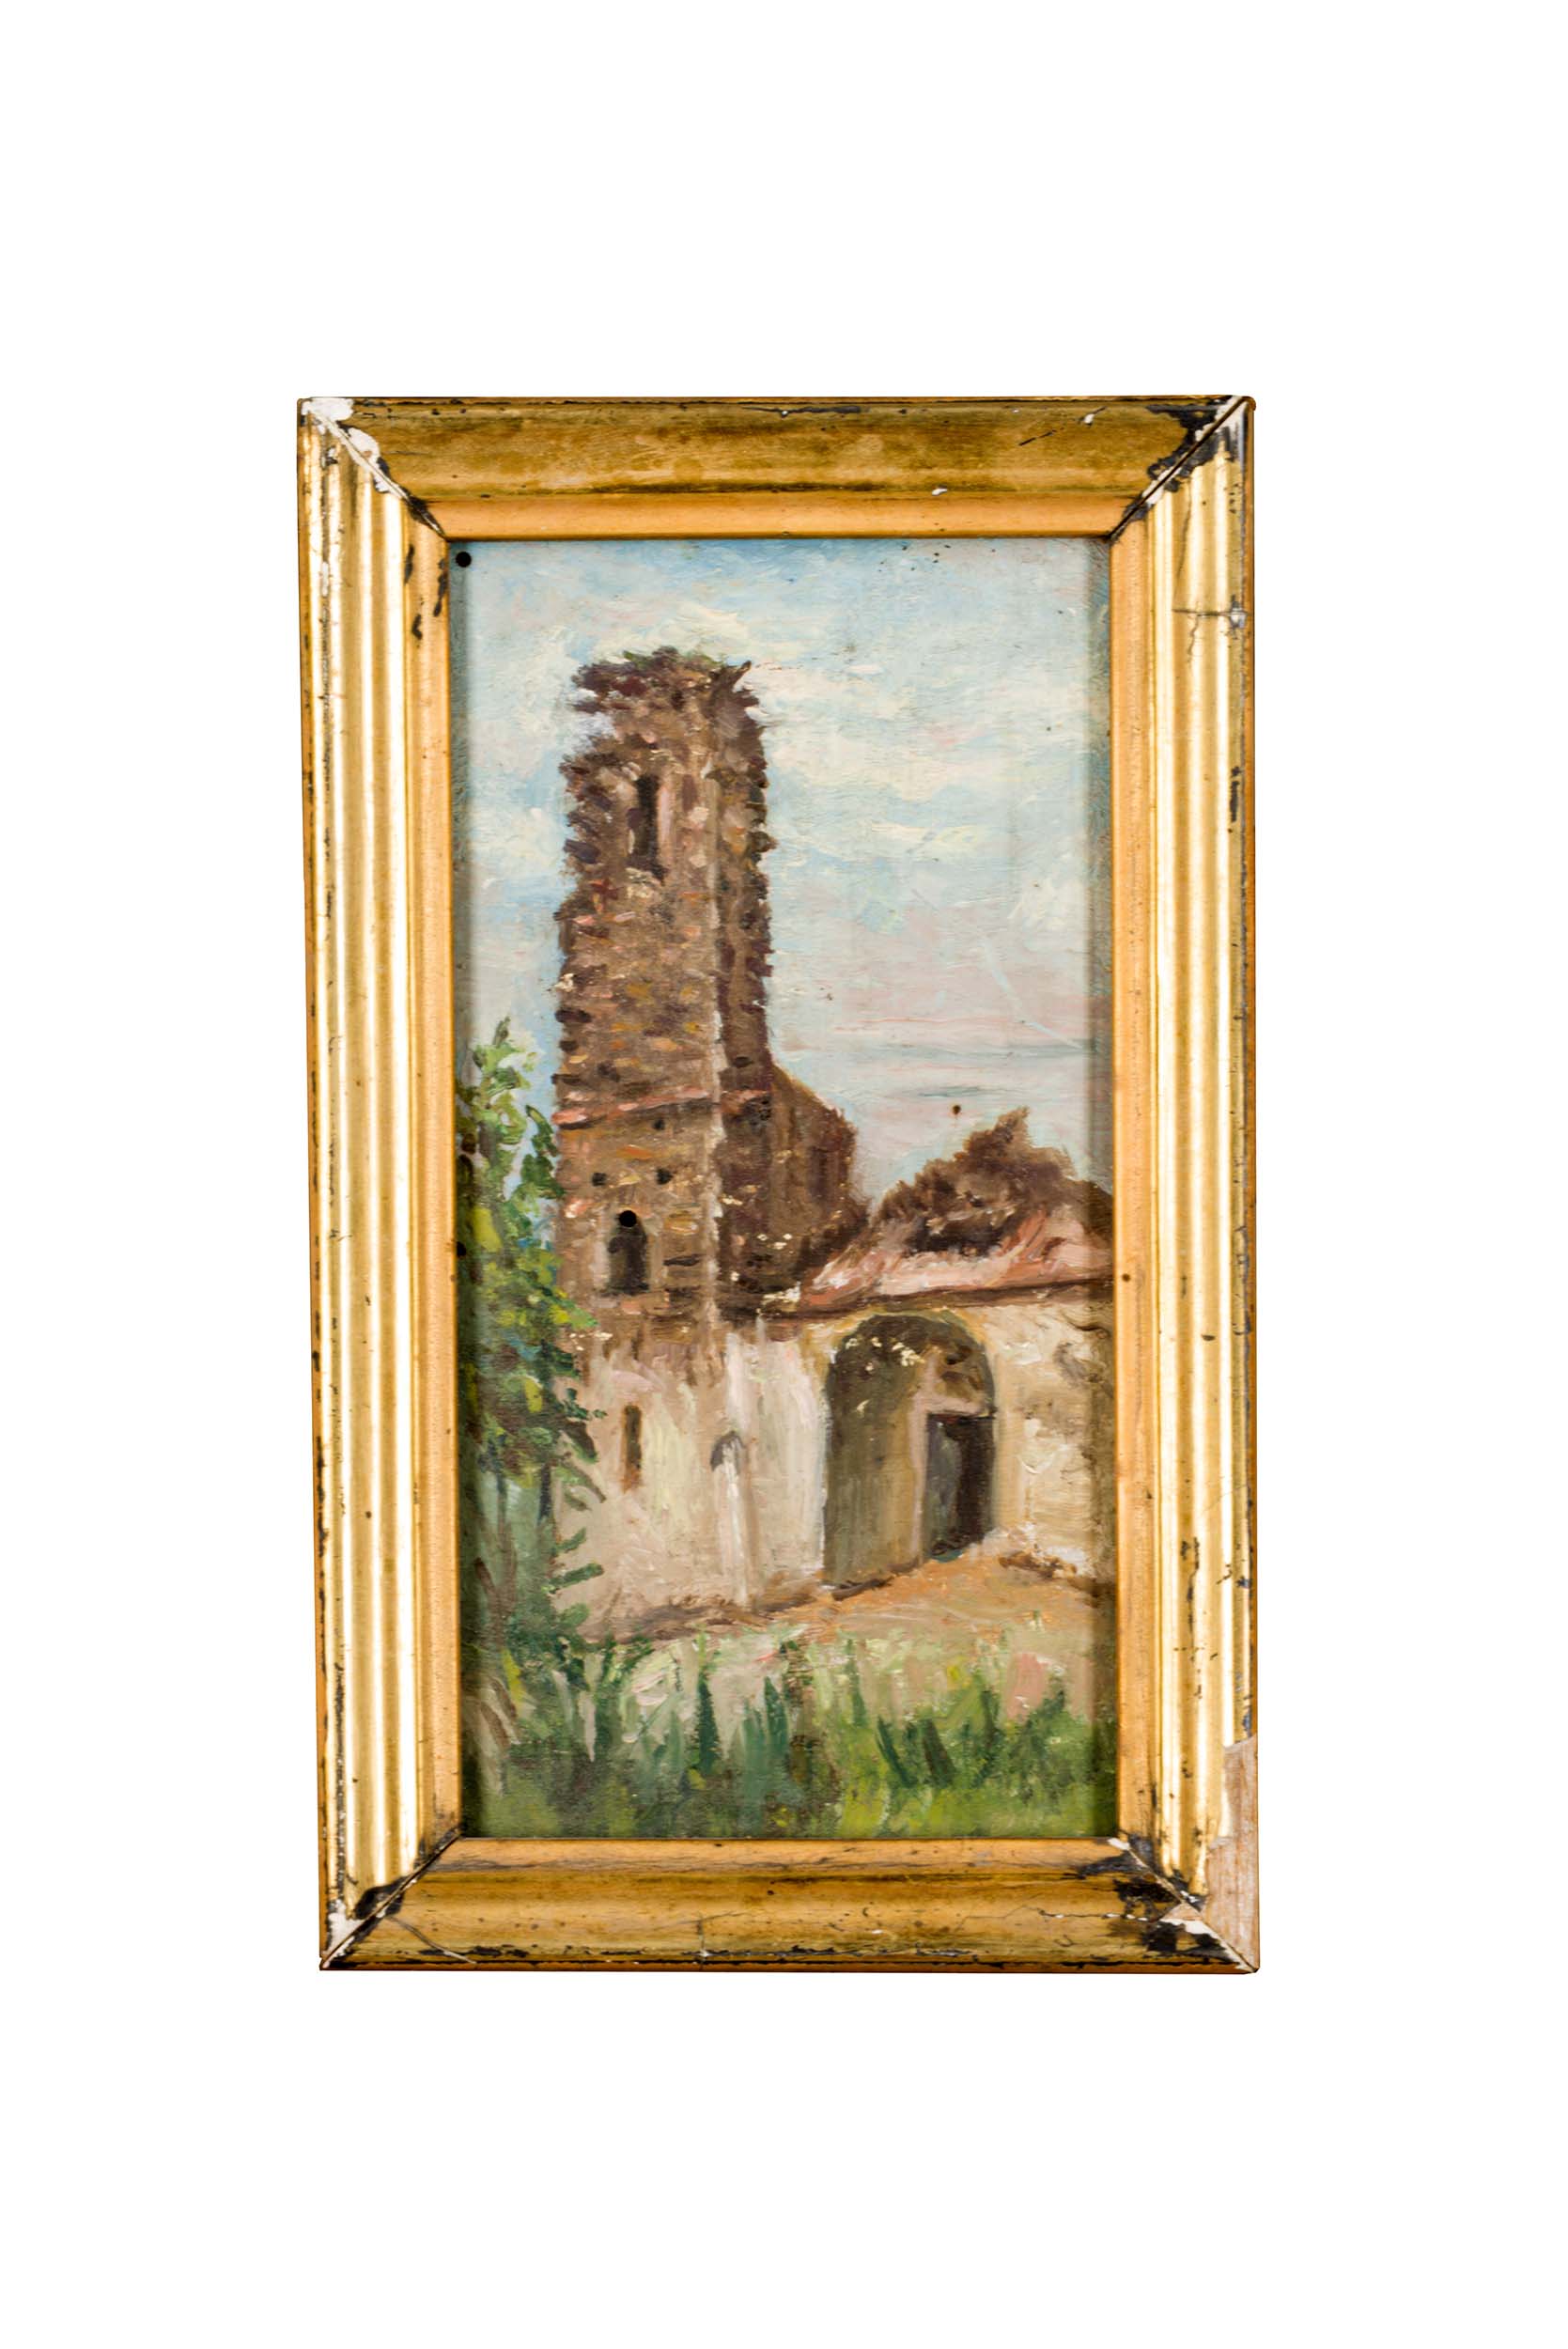 Chiesa rupestre, Chiesa rupestre (dipinto) di ignoto di ambito campano (attribuito) - ambito Italia meridionale (prima metà XX)